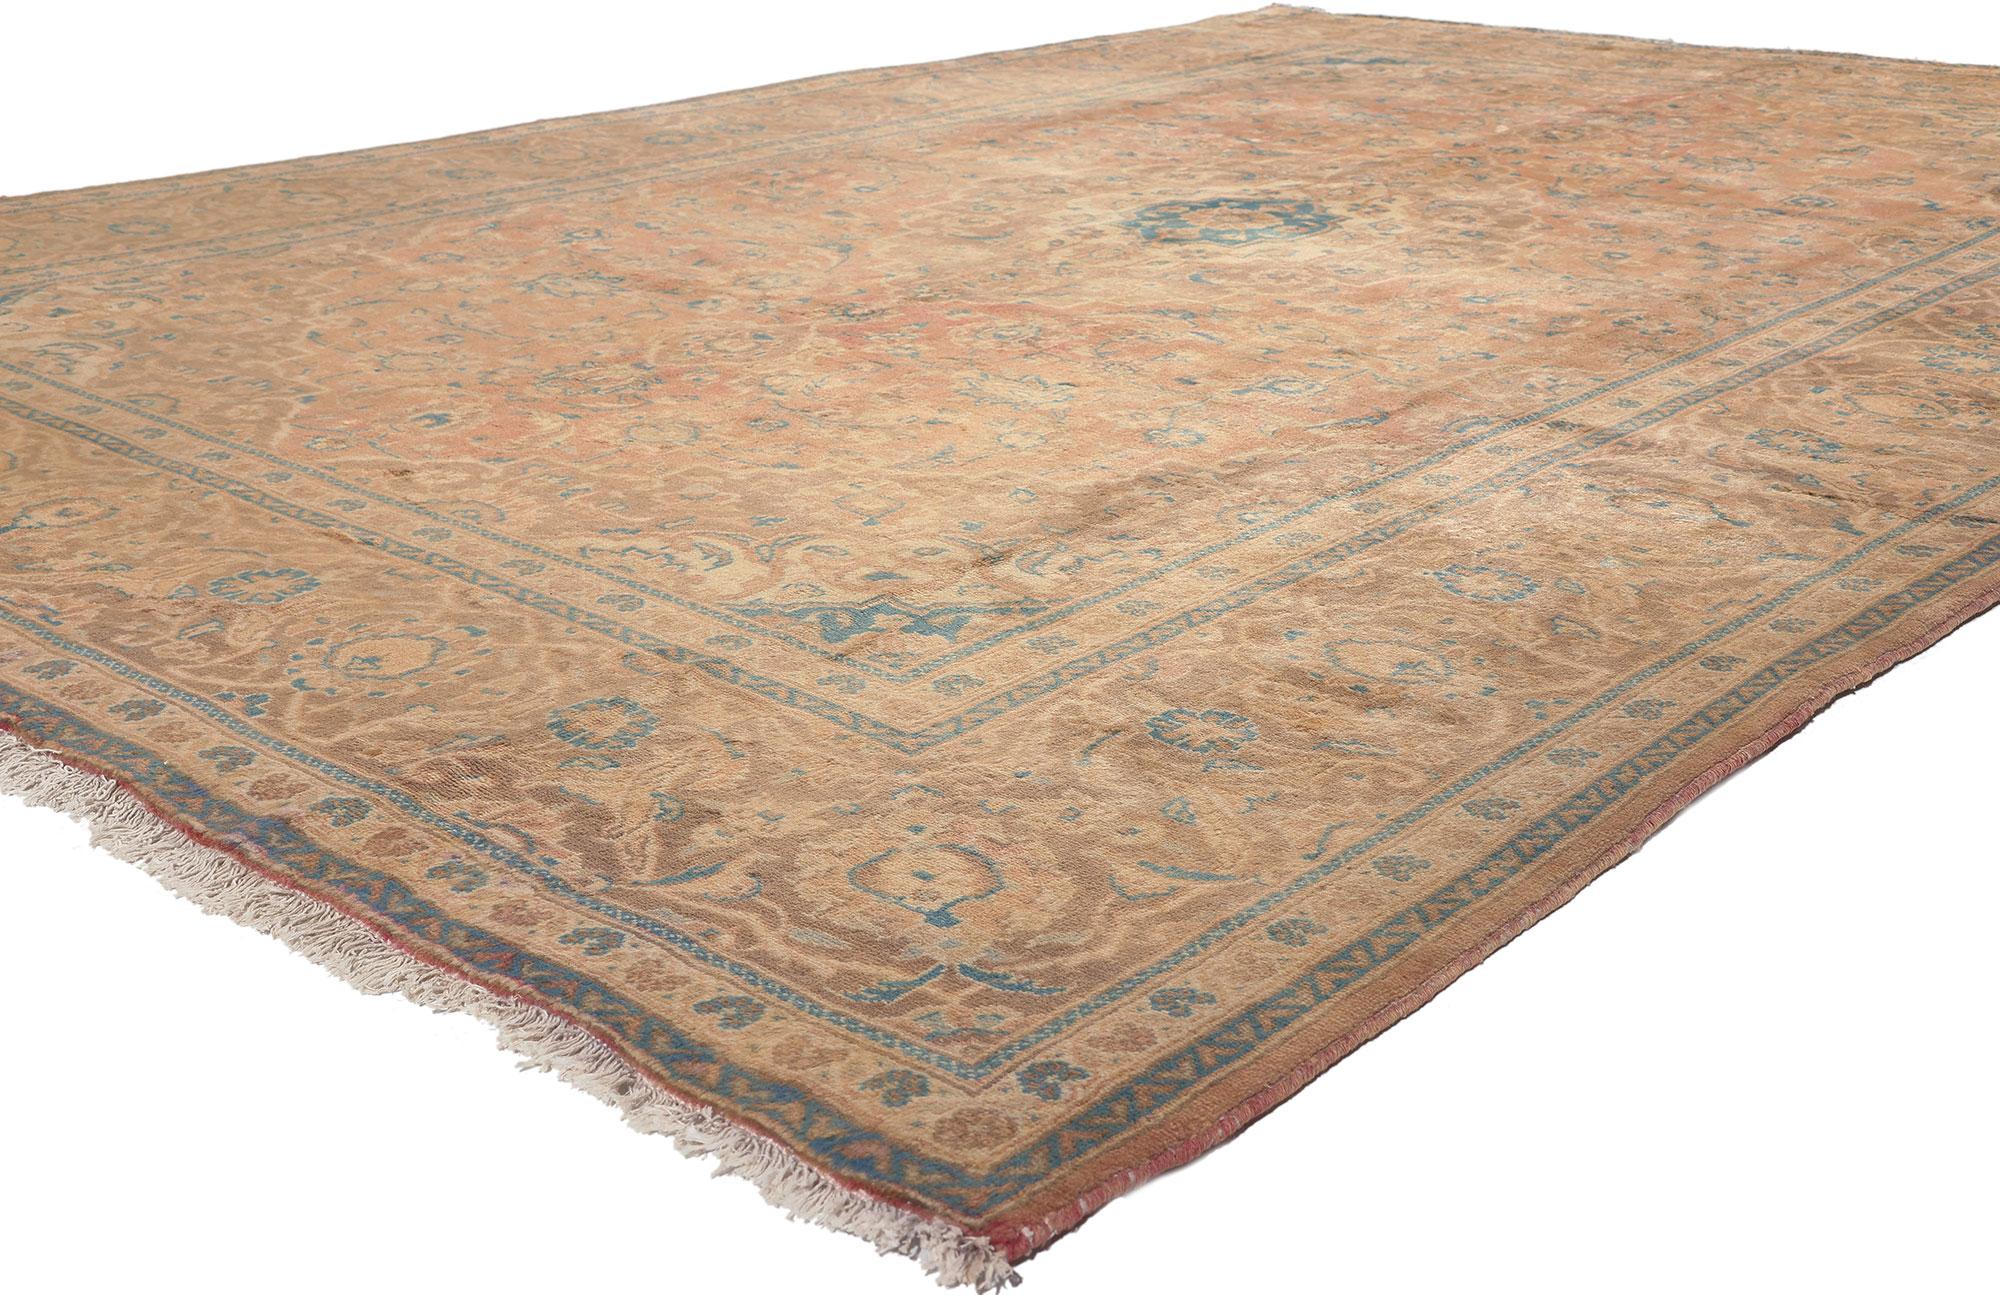 76457 tapis Persan vintage Yazd de style méditerranéen toscan. Ce tapis persan vintage Yazd en laine nouée à la main présente un médaillon central en forme de cuspide entouré d'un motif floral vivant composé de palmettes, de fleurs, de feuilles de